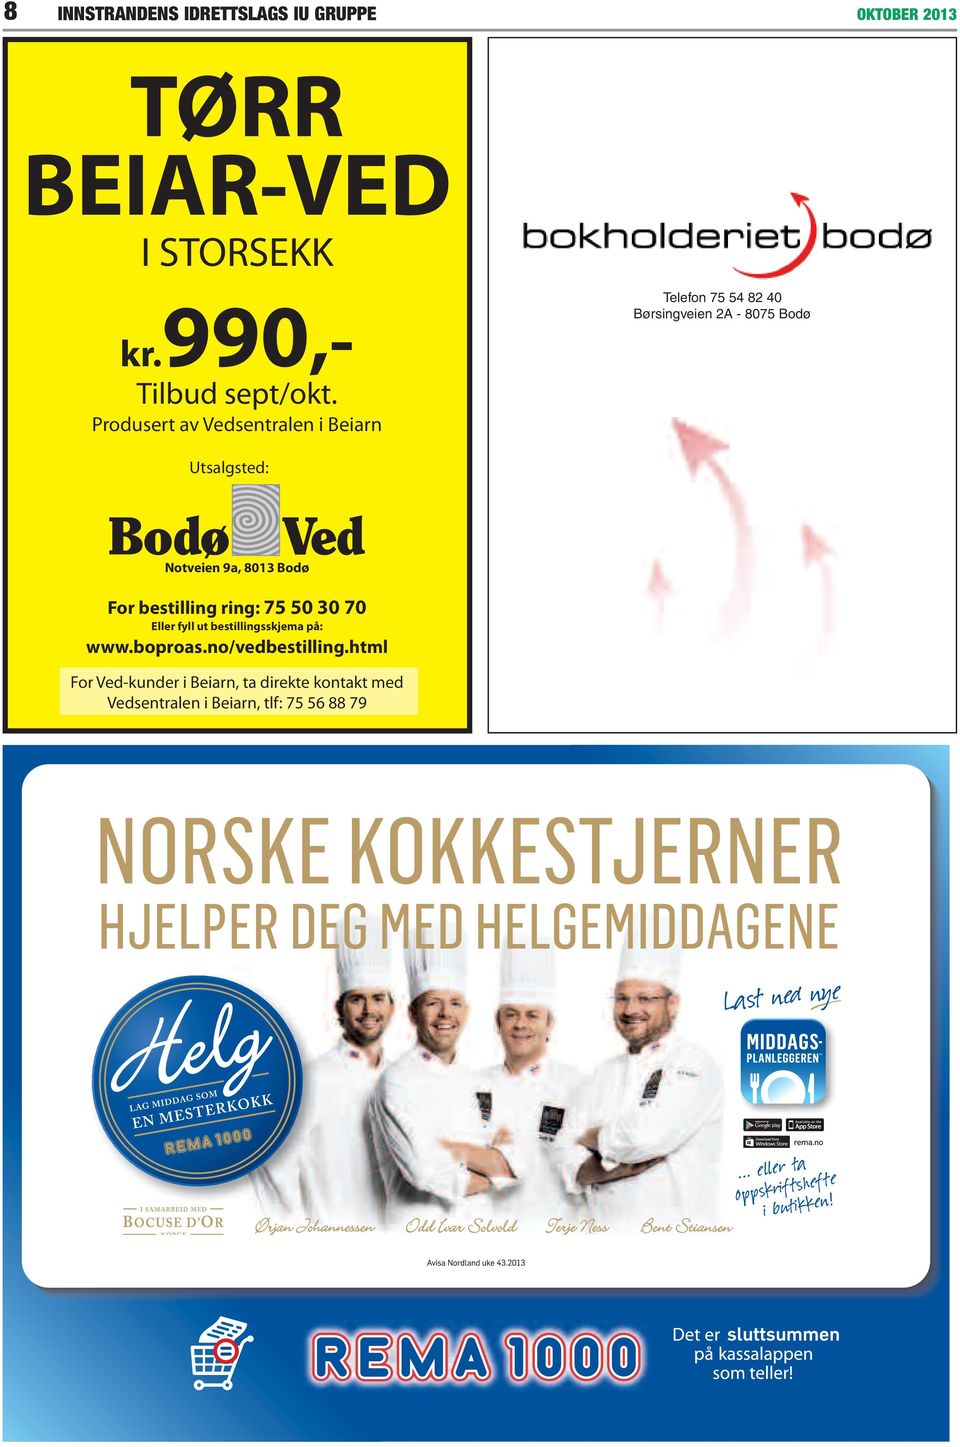 Notveien 9a, 8013 Bodø For bestilling ring: 75 50 30 70 Eller fyll ut bestillingsskjema på: www.